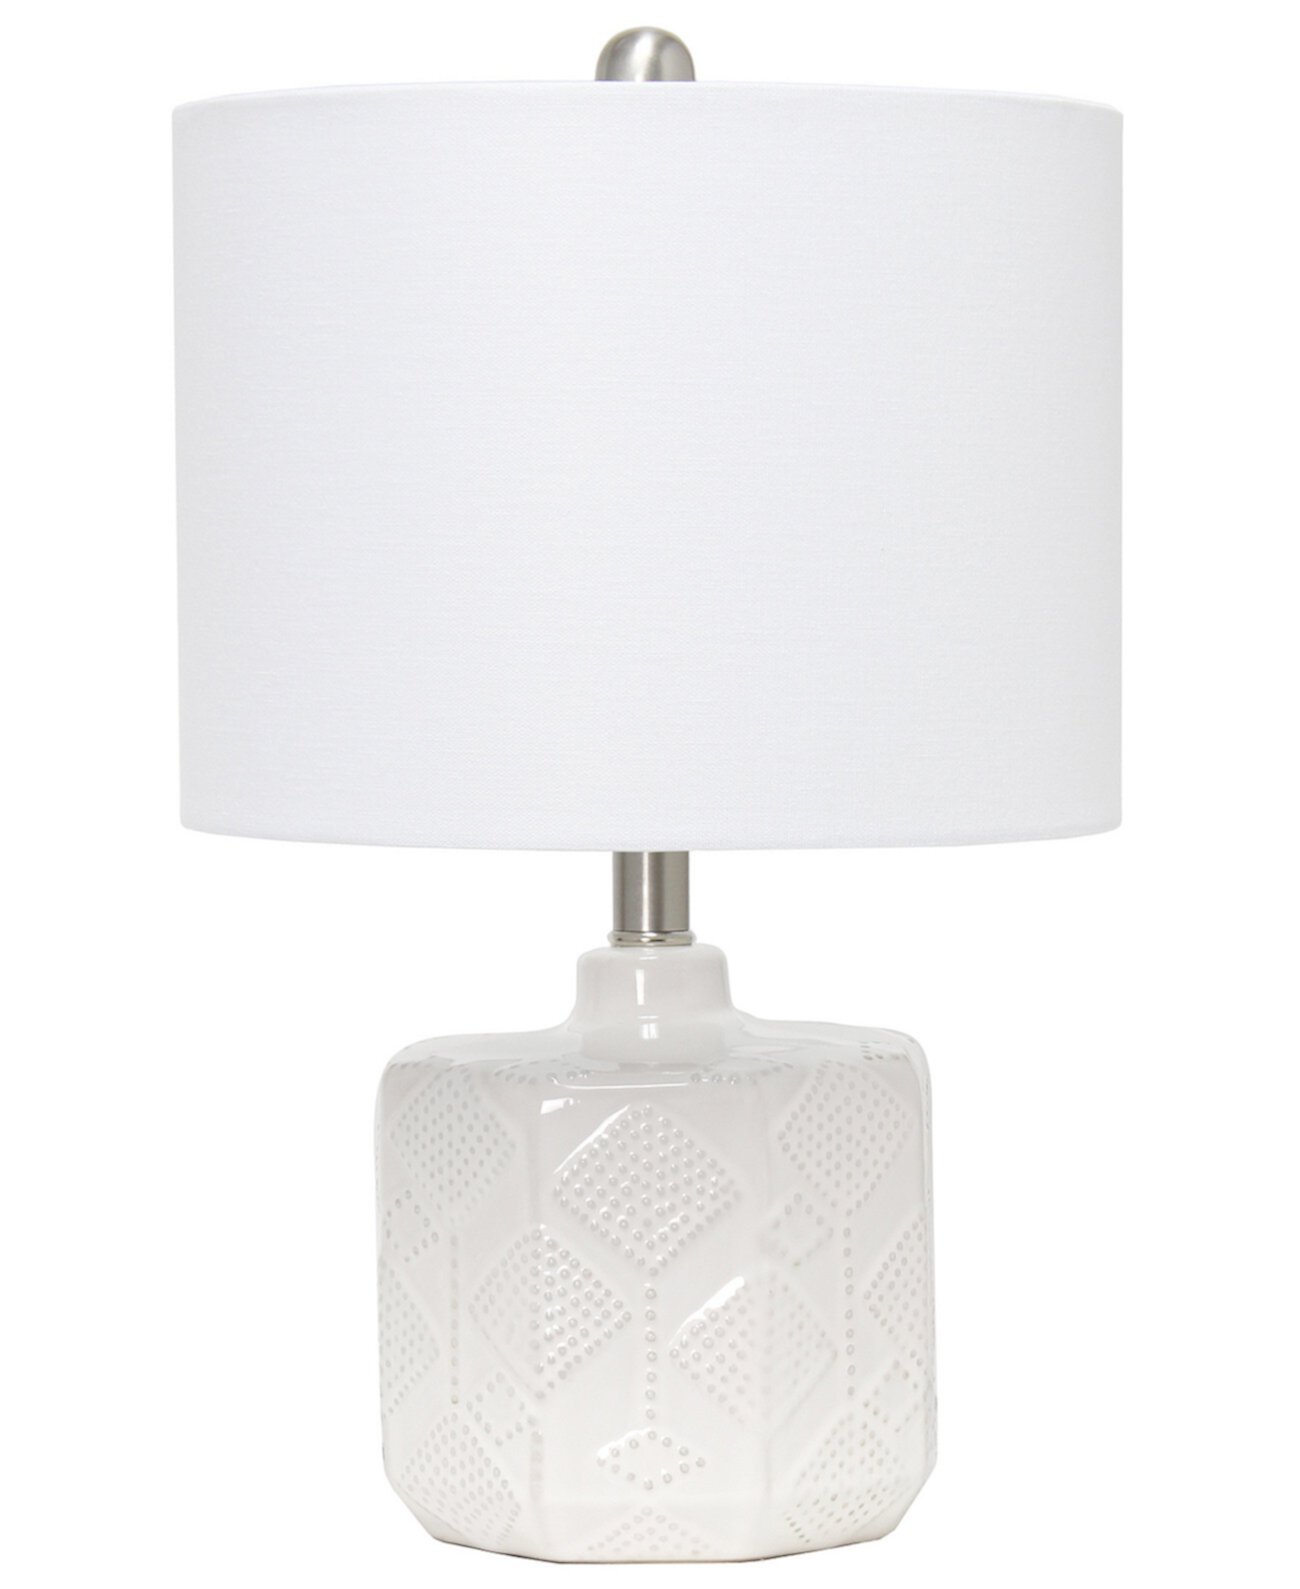 19-дюймовая современная богемная керамическая прикроватная настольная лампа с цветочным узором и текстурой с абажуром из белой ткани All The Rages